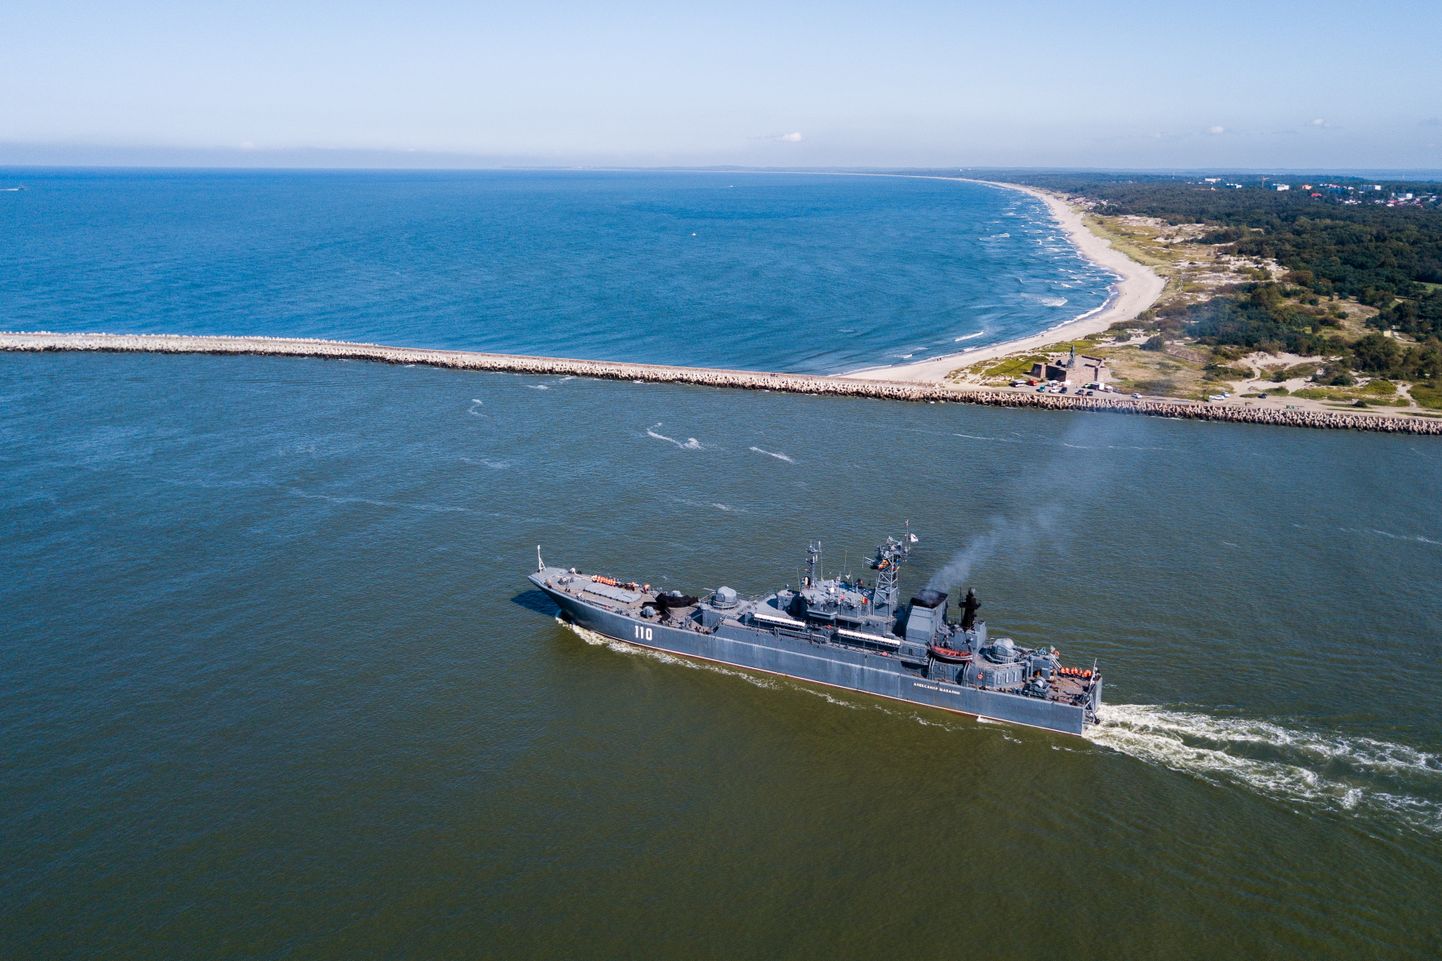 Kaliningrad on Venemaa üks militariseeritumaid piirkondi. Seal asuvad muu hulgas Balti laevastiku baas ja lühimaaraketid.